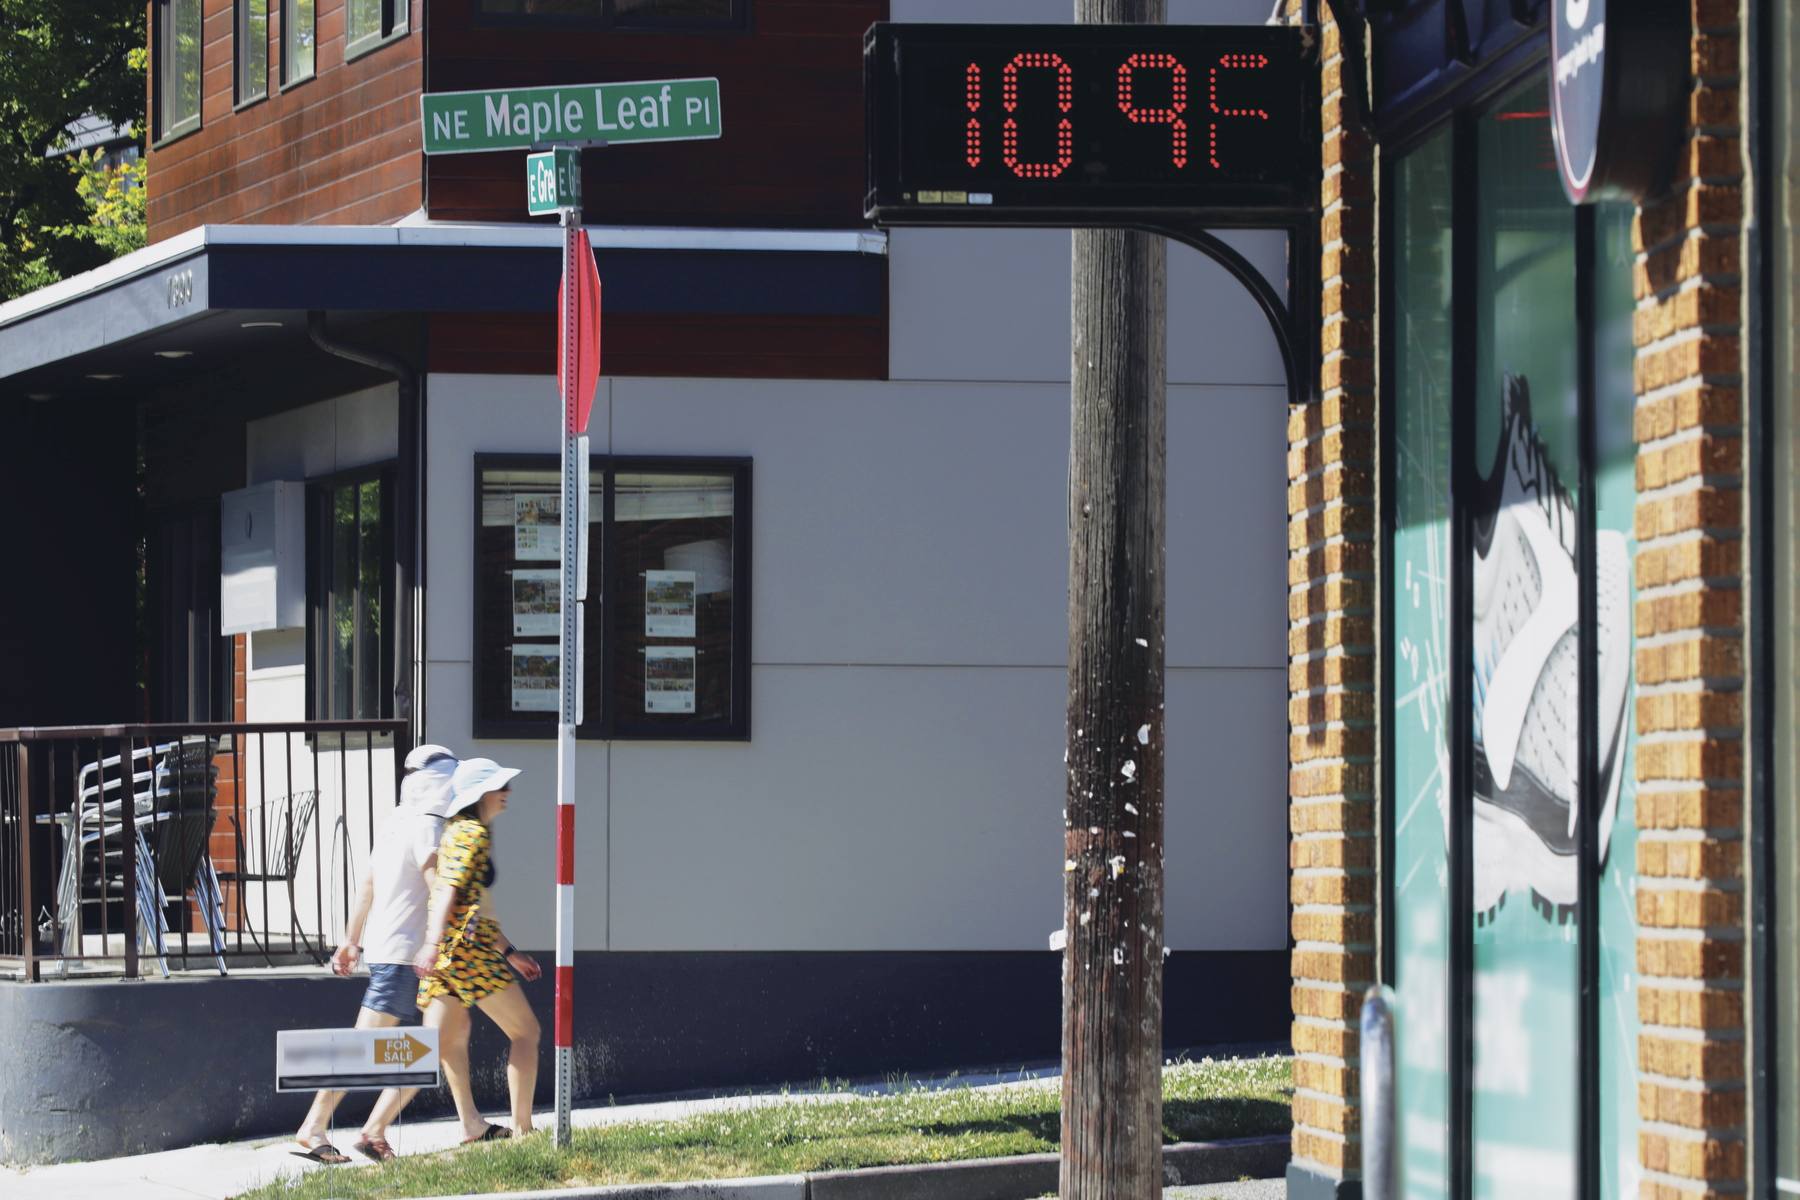 Fotografia. Termômetro de rua registrando 109 graus fahrenheit. O dia está ensolarado e há duas pessoas caminhando na rua, utilizando roupas leves e chapéu.